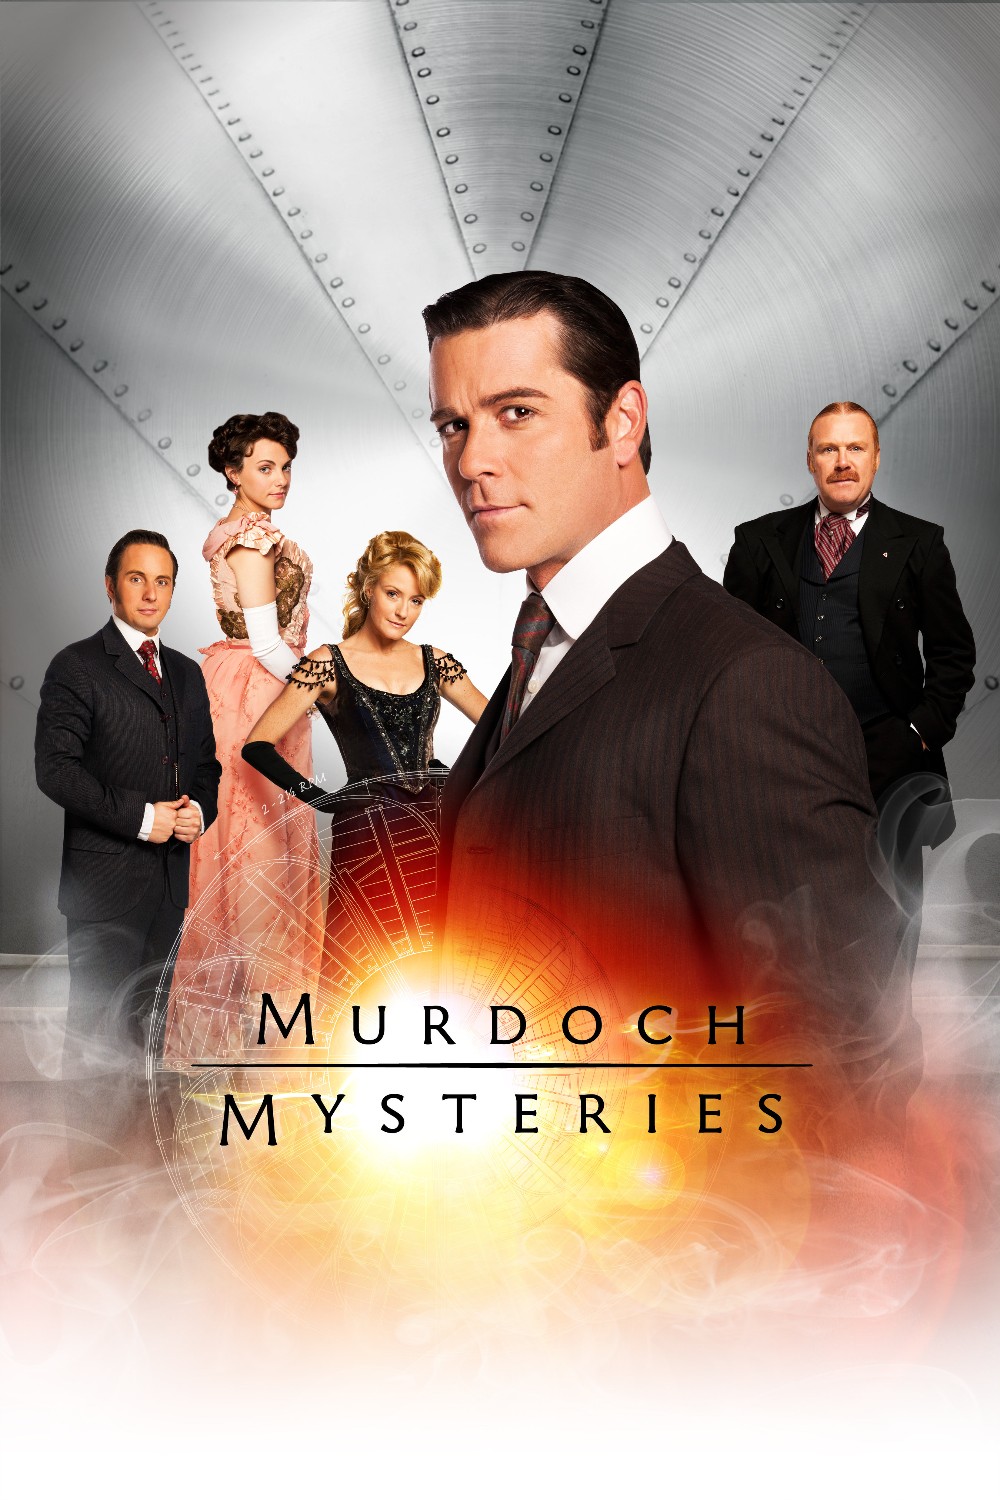 Murdoch Mysteries S17E11 [1080p] (x265) [6 CH] A8111d23caddc2184fcf78619b1562e1